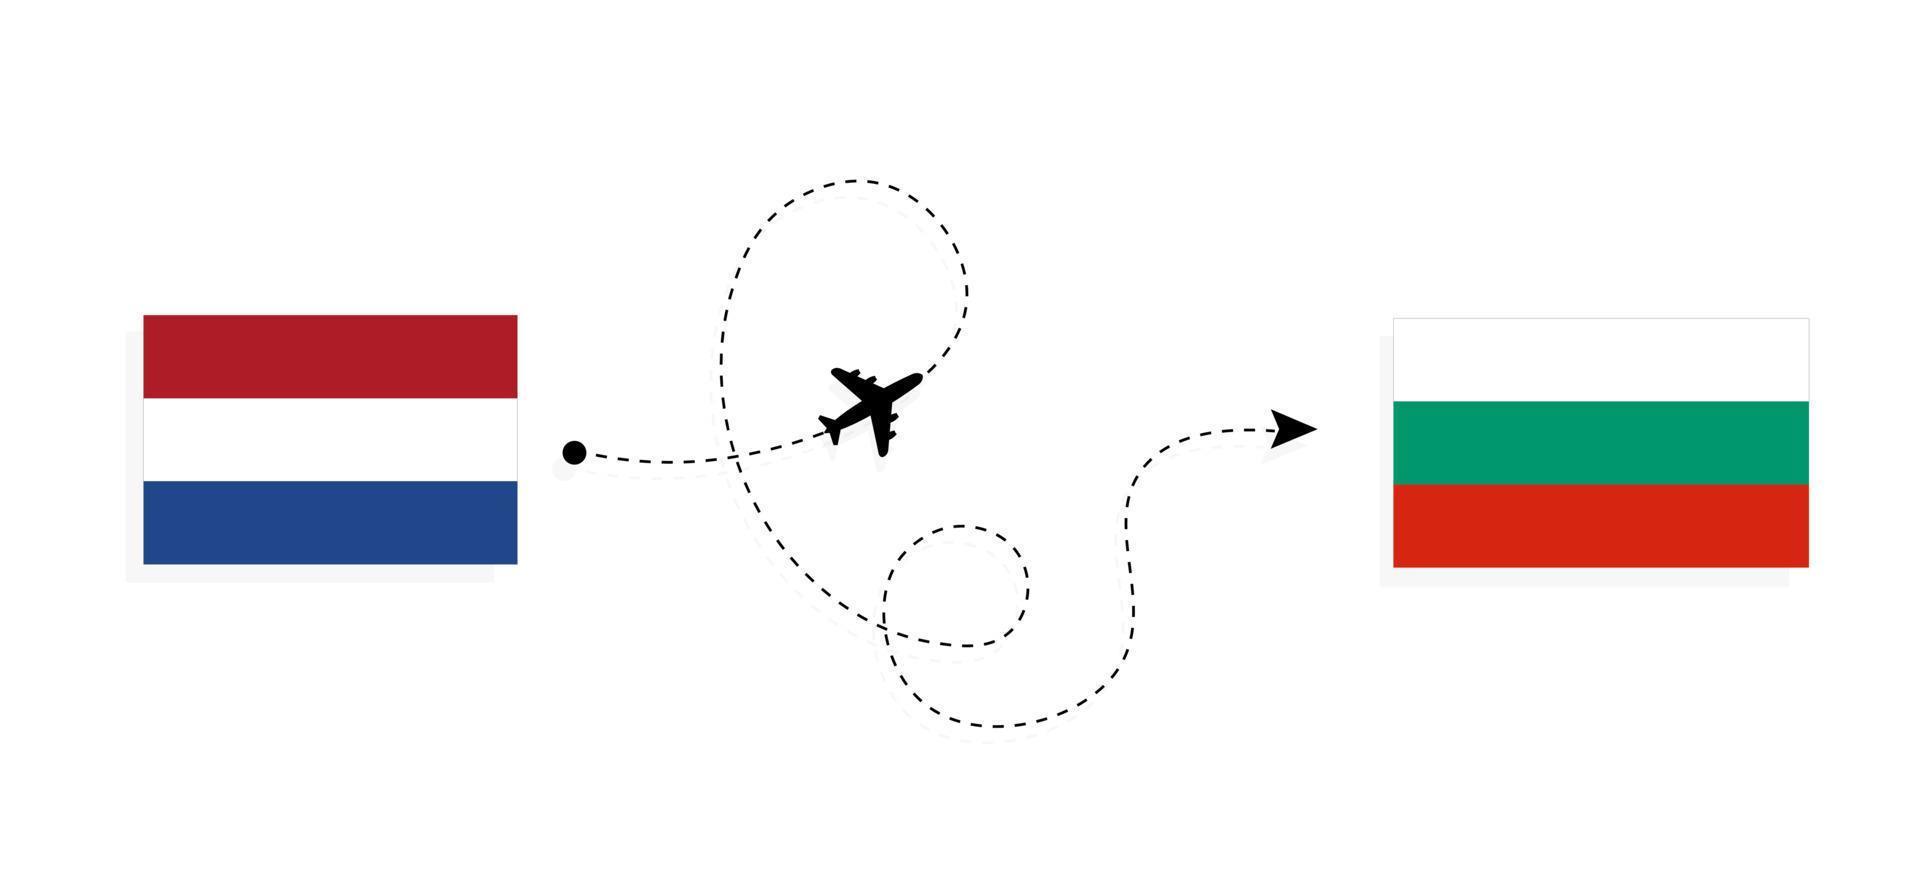 vlucht en reis van nederland naar bulgarije per reisconcept voor passagiersvliegtuigen vector